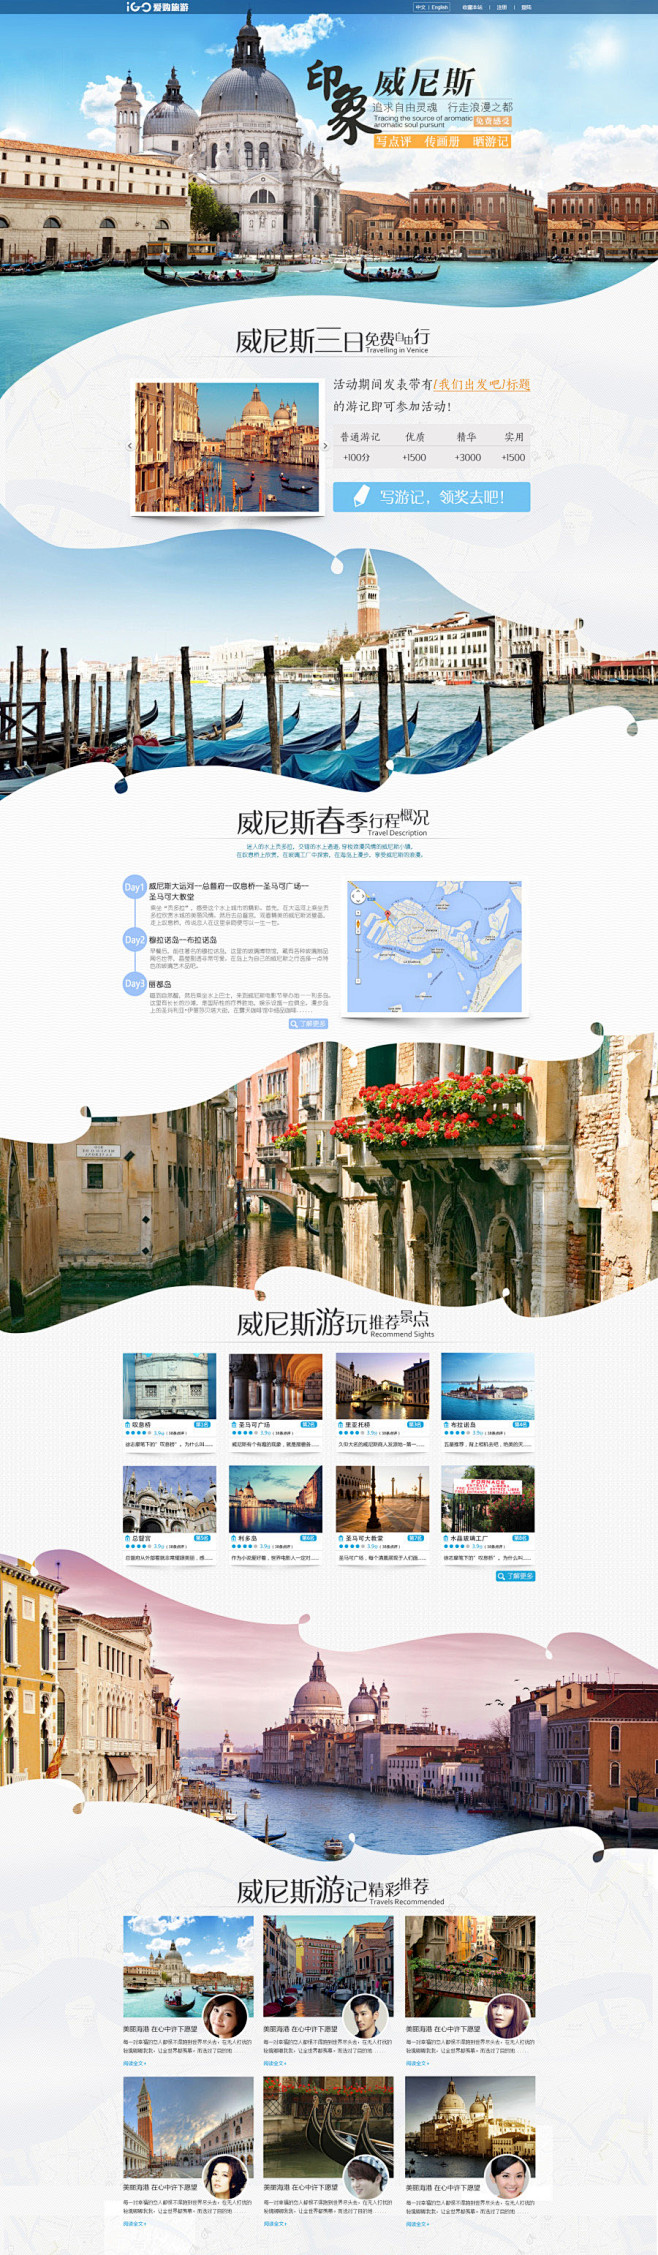 威尼斯自由行主题页设计欣赏.jpg